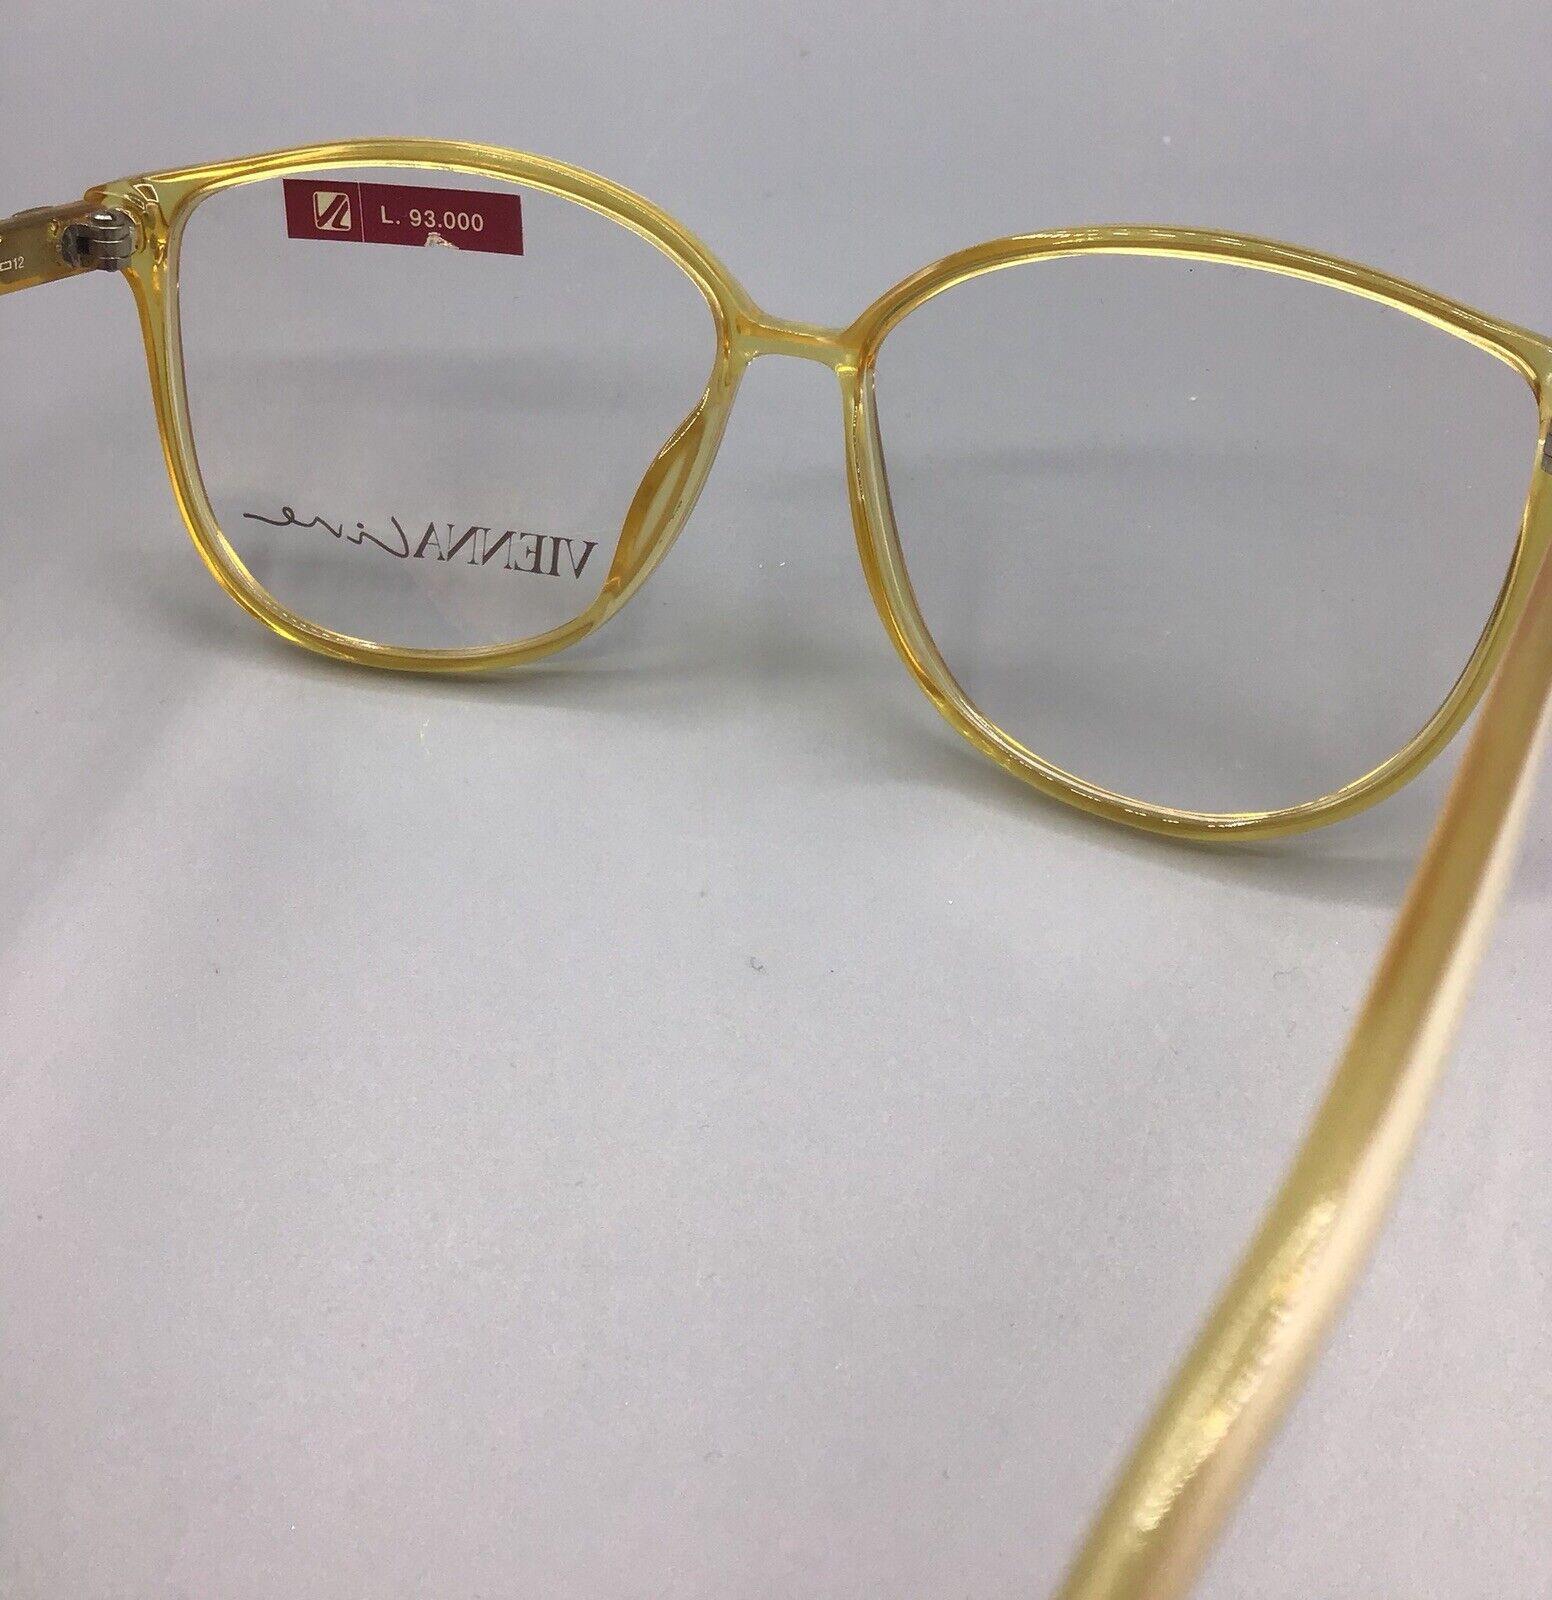 Viennaline occhiale vintage eyewear 1556 70 brillen lunettes